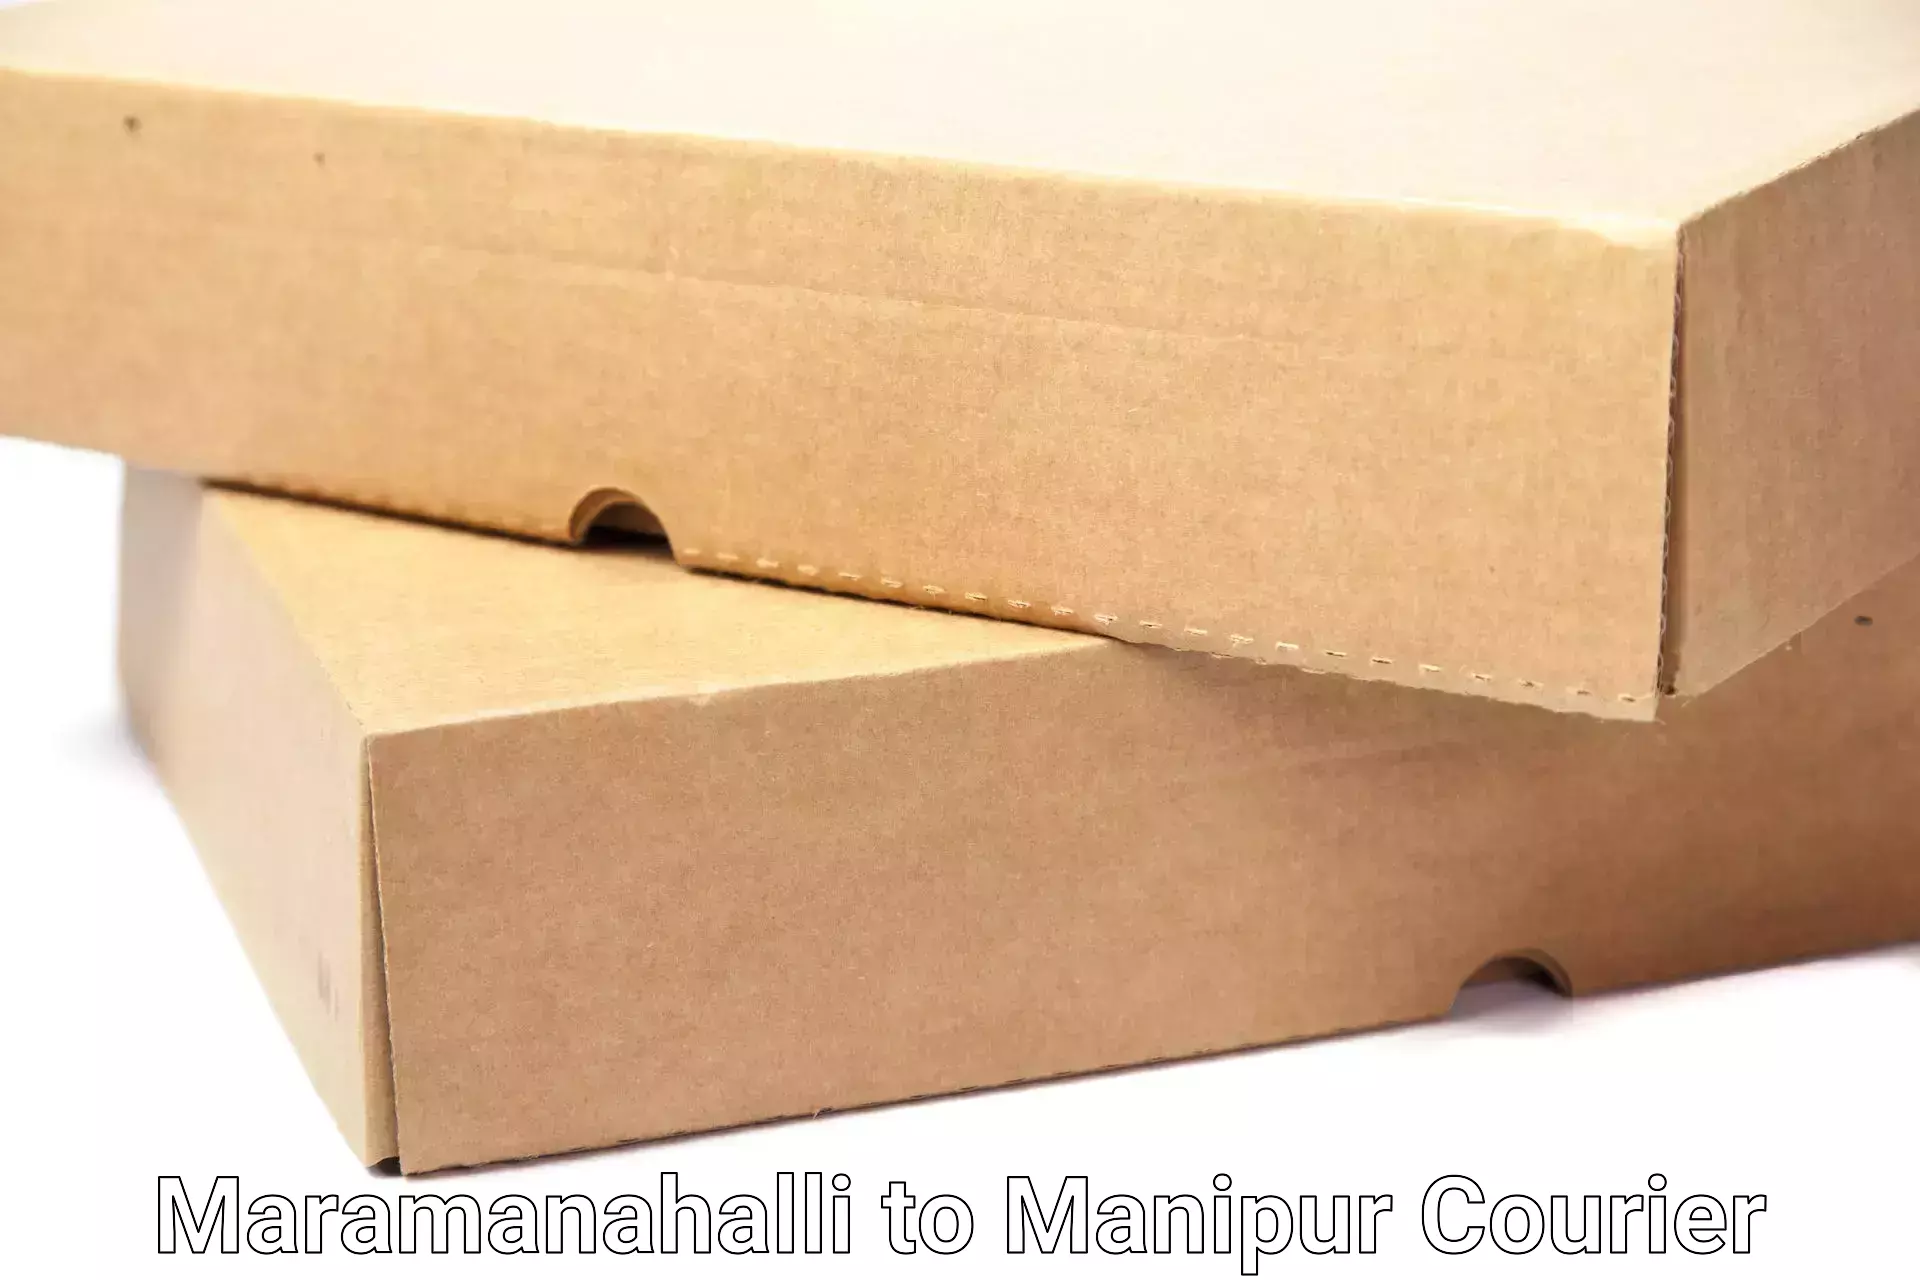 Moving and packing experts Maramanahalli to Churachandpur